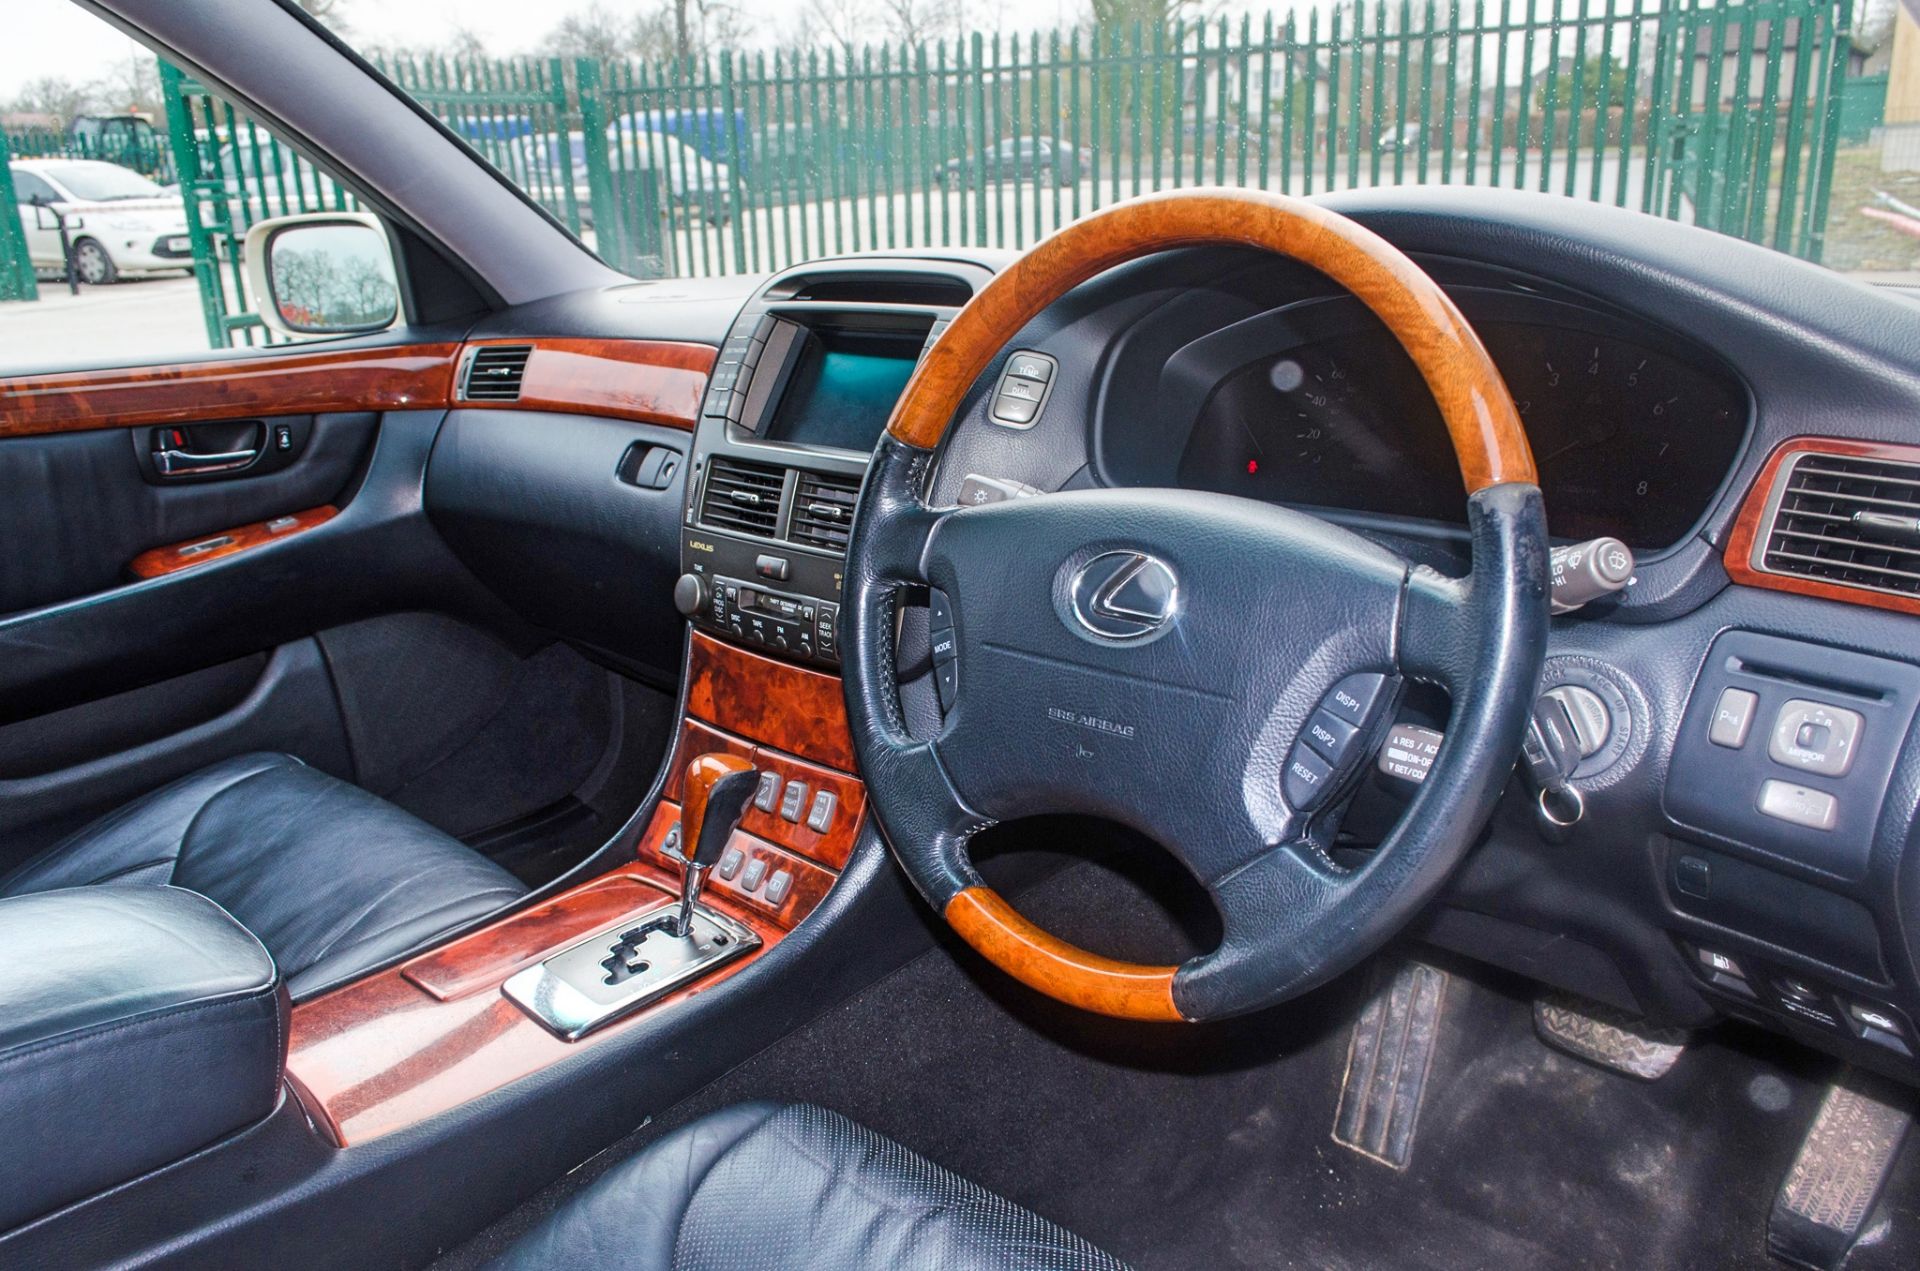 2004 Lexus LS 430 4.3 litre V8 4 door saloon car - Image 31 of 54